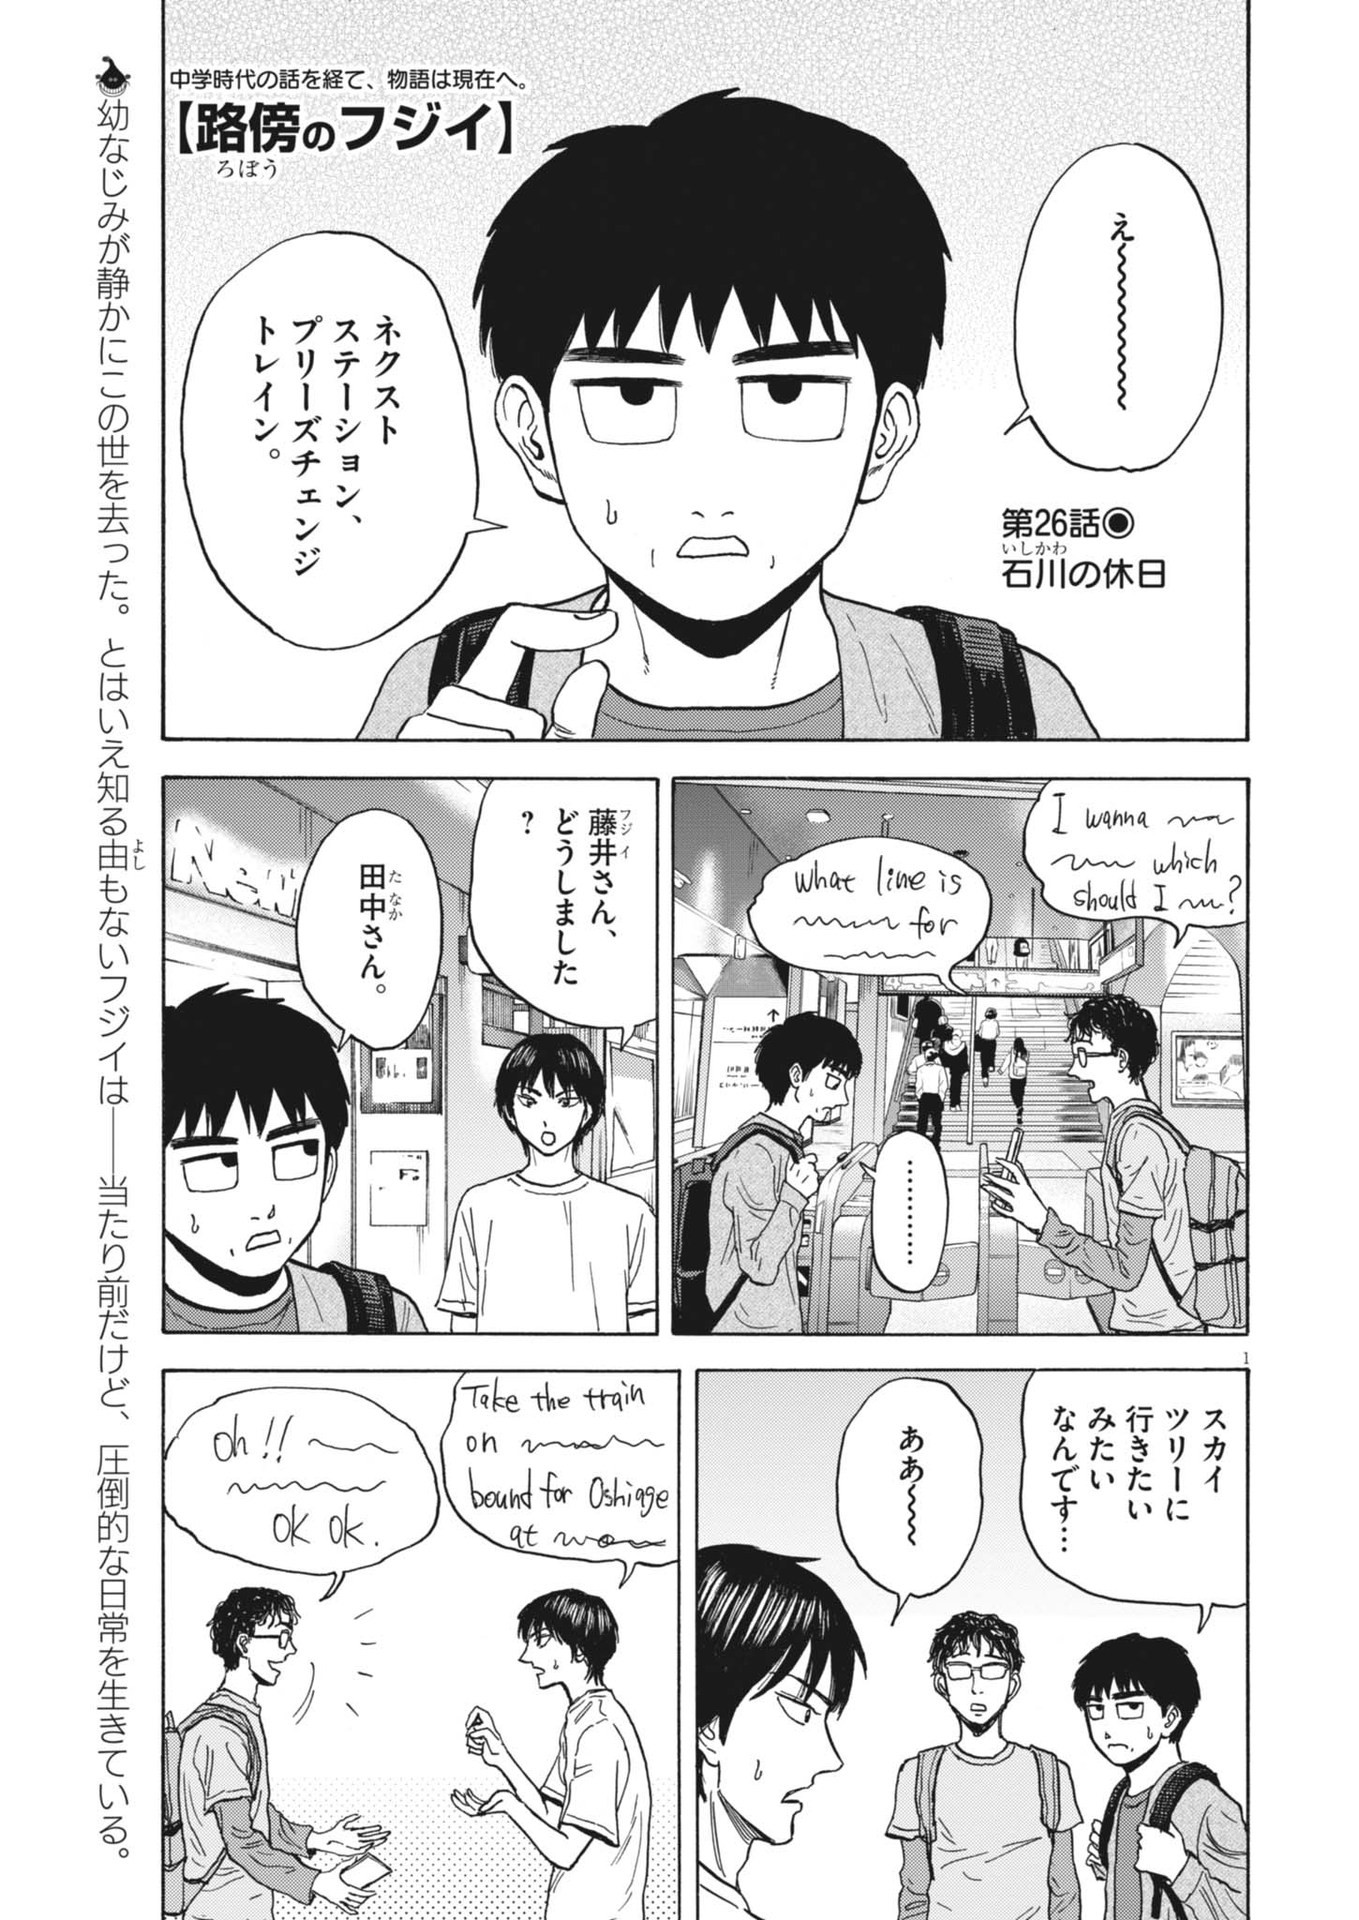 Robou no Fujii – Idai Naru Bonjin kara no Tayori - Chapter 26 - Page 1